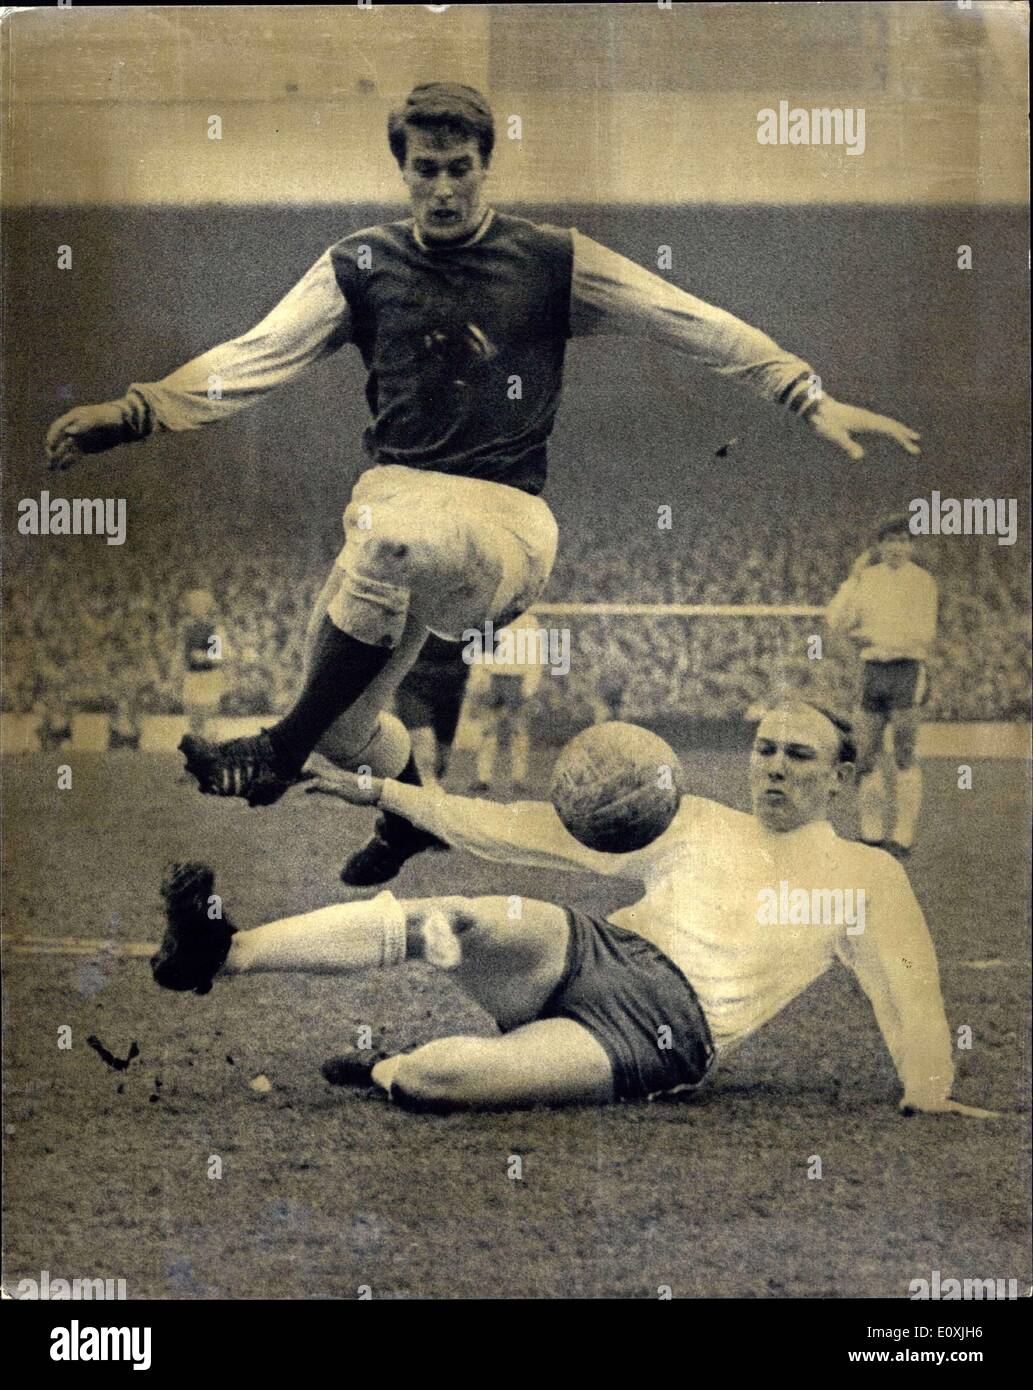 Febbraio 11, 1967 - Westham rispetto a Sunderland in Upton Park: mostra fotografica di Geoff Hurst del West Ham, salti su Cecil Irwin, di Sunderland, durante un West Ham attacco contro il Sunderland obiettivo. Foto Stock